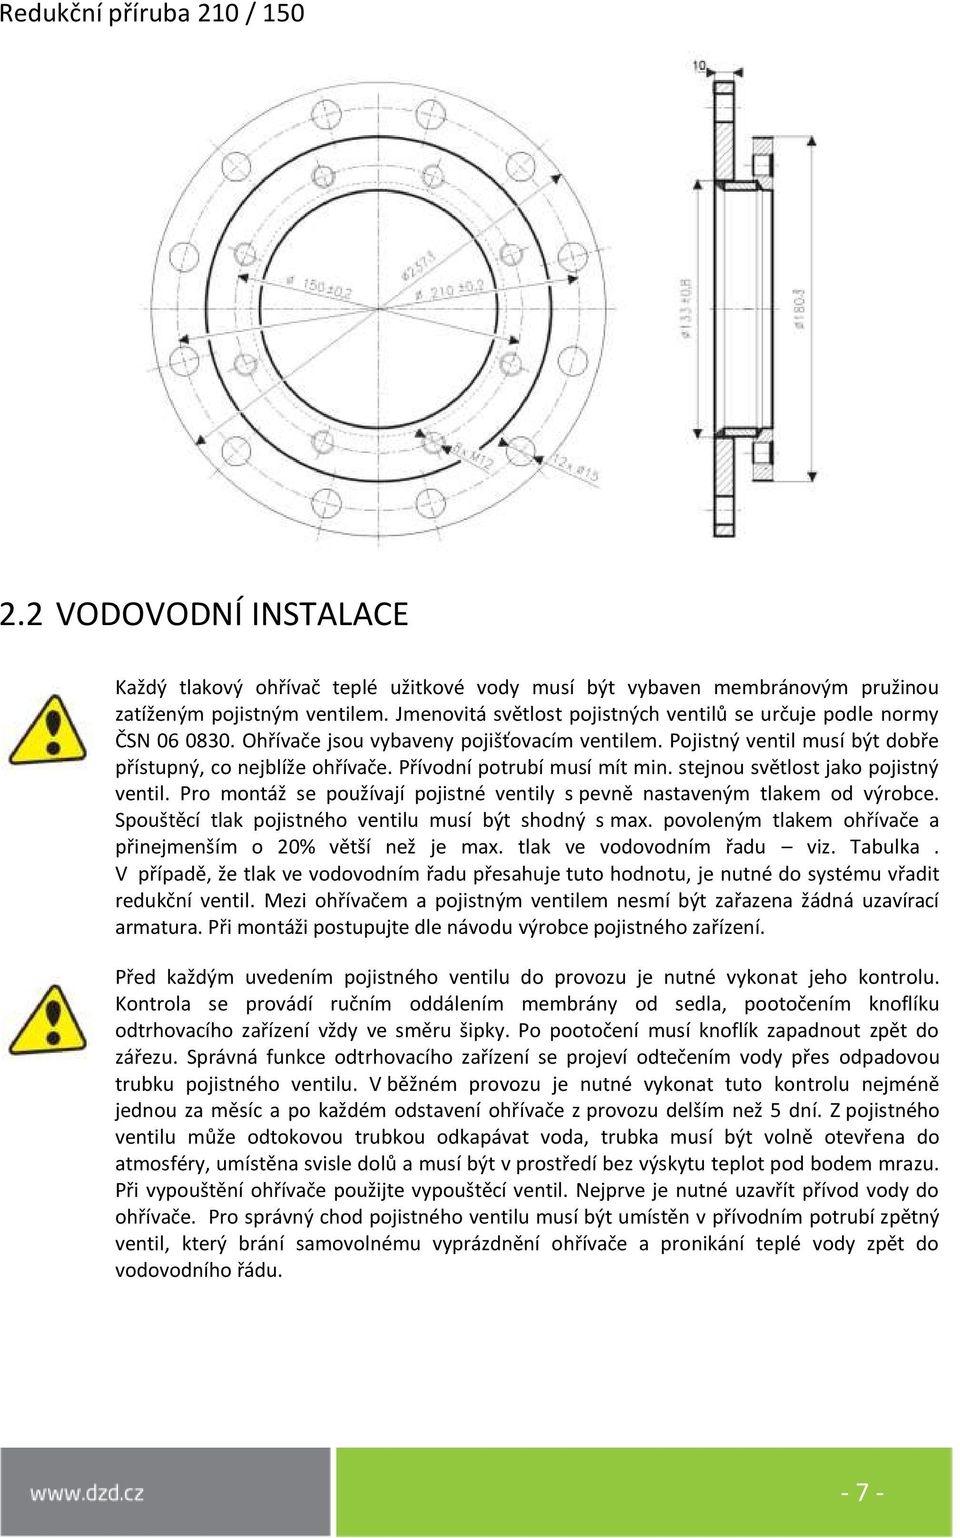 Přívodní potrubí musí mít min. stejnou světlost jako pojistný ventil. Pro montáž se používají pojistné ventily s pevně nastaveným tlakem od výrobce.